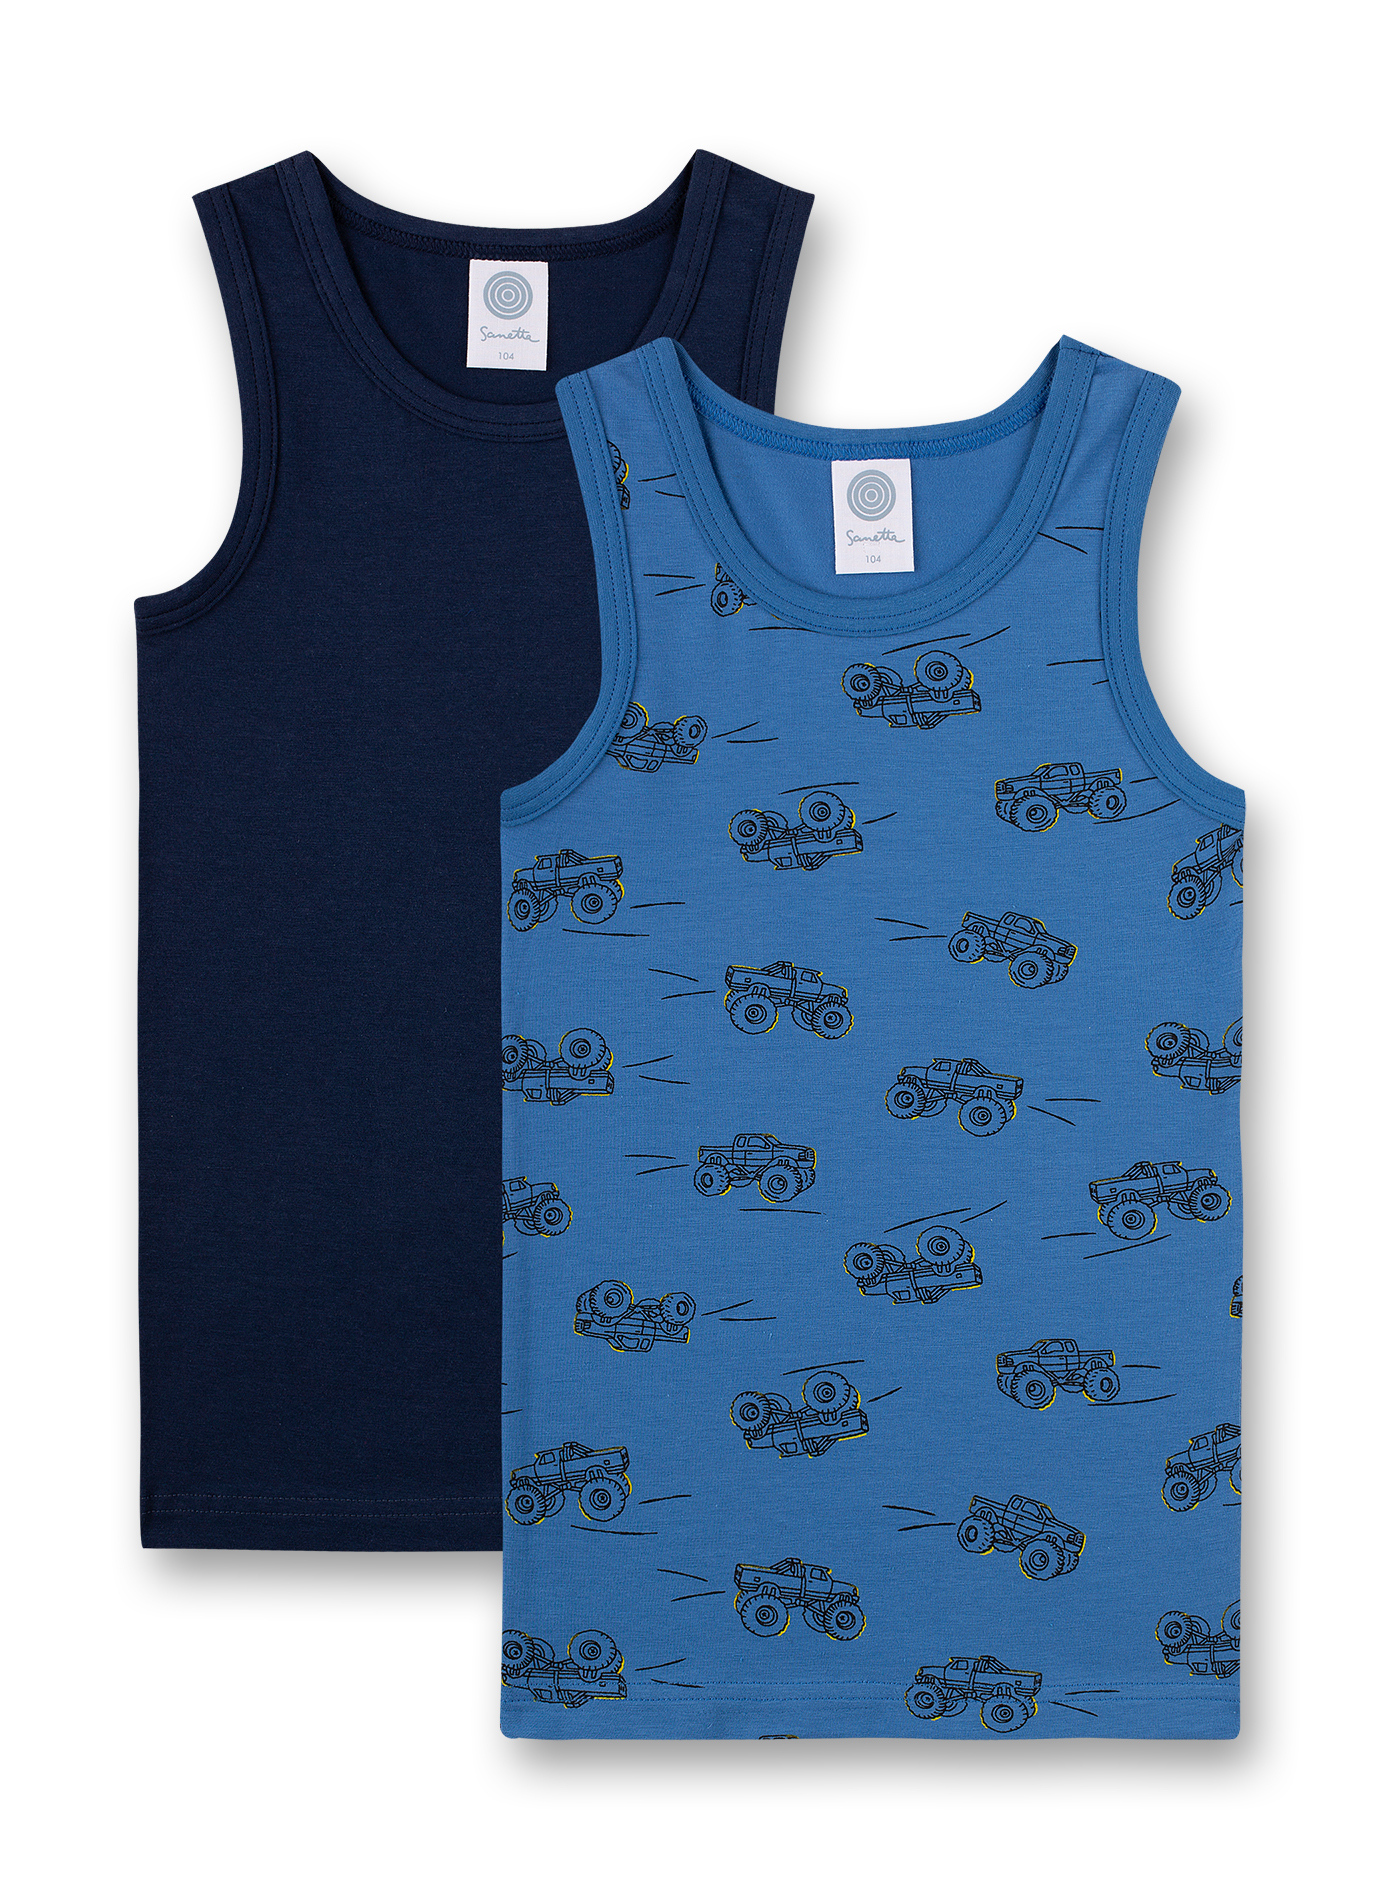 Jungen-Unterhemd (Doppelpack) Blau und Dunkelblau Bigfoot